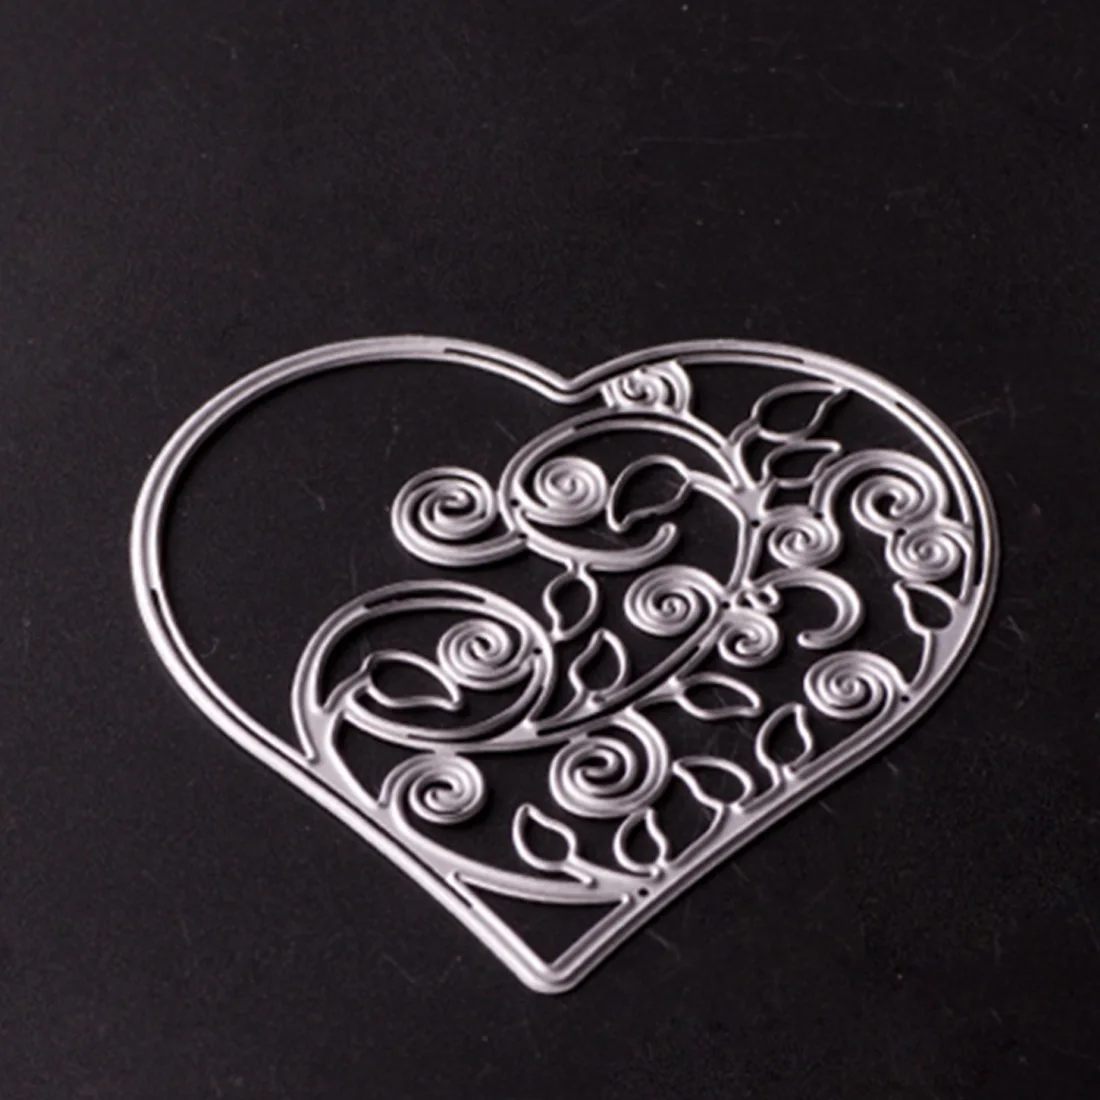 Высокое качество сердце трафареты металлические режущие штампы DIY Скрапбукинг Декоративные бумажные шаблоны для резки